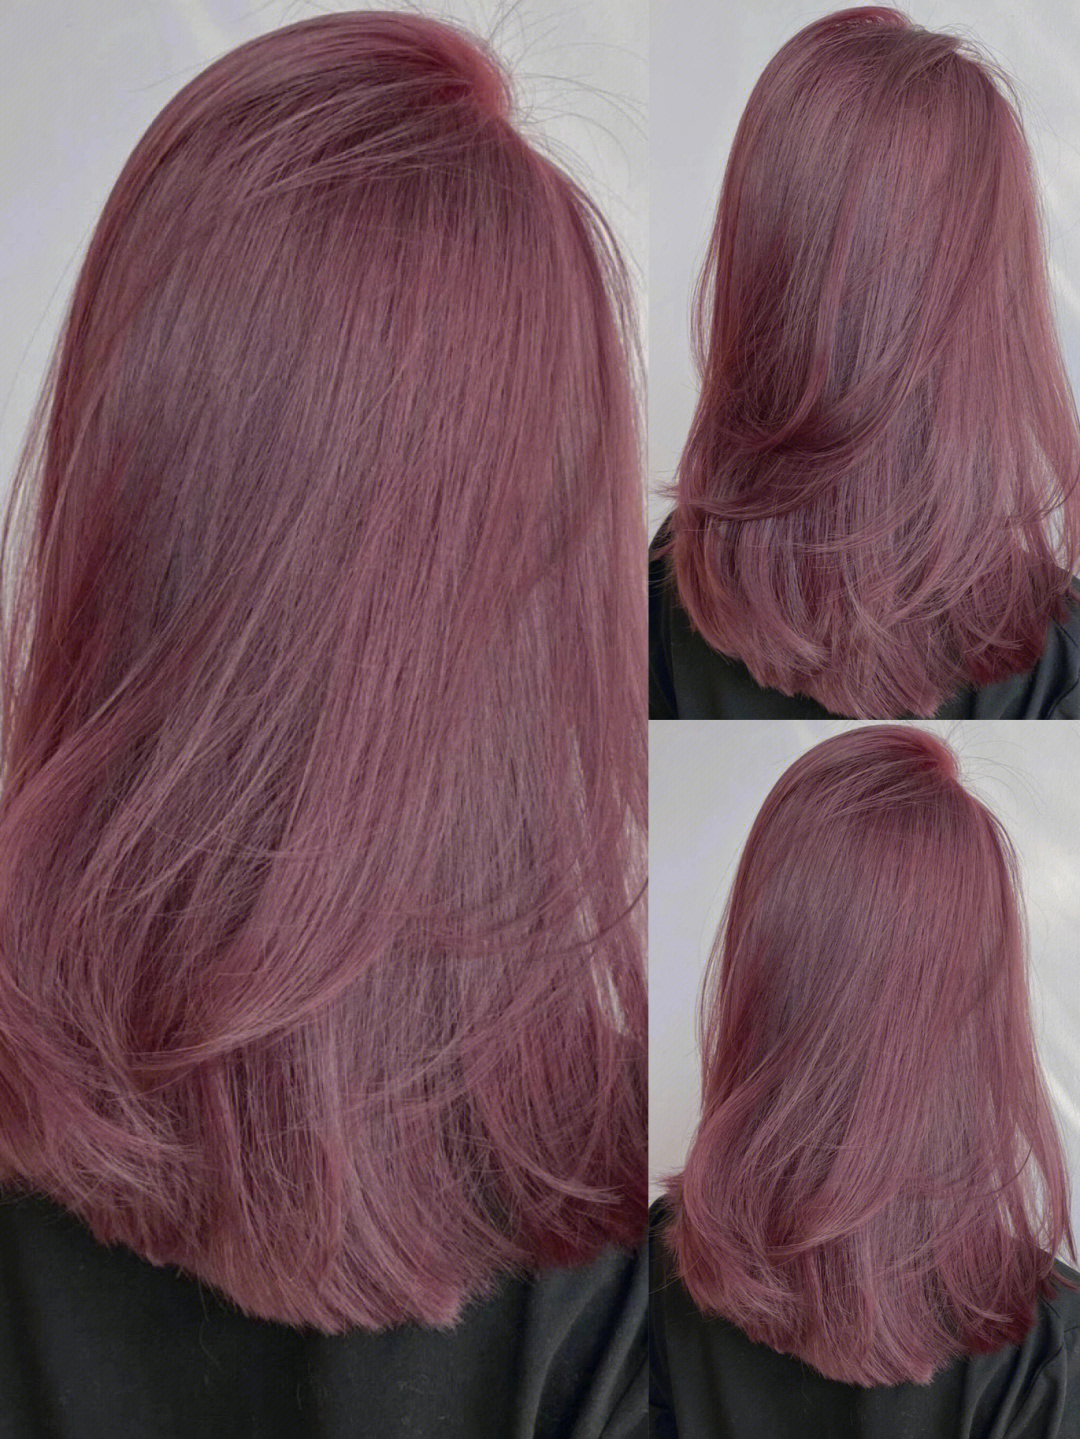 粉紫色头发,顾名思义就是结合了粉色和紫色的染发颜色,这两种绝美发色